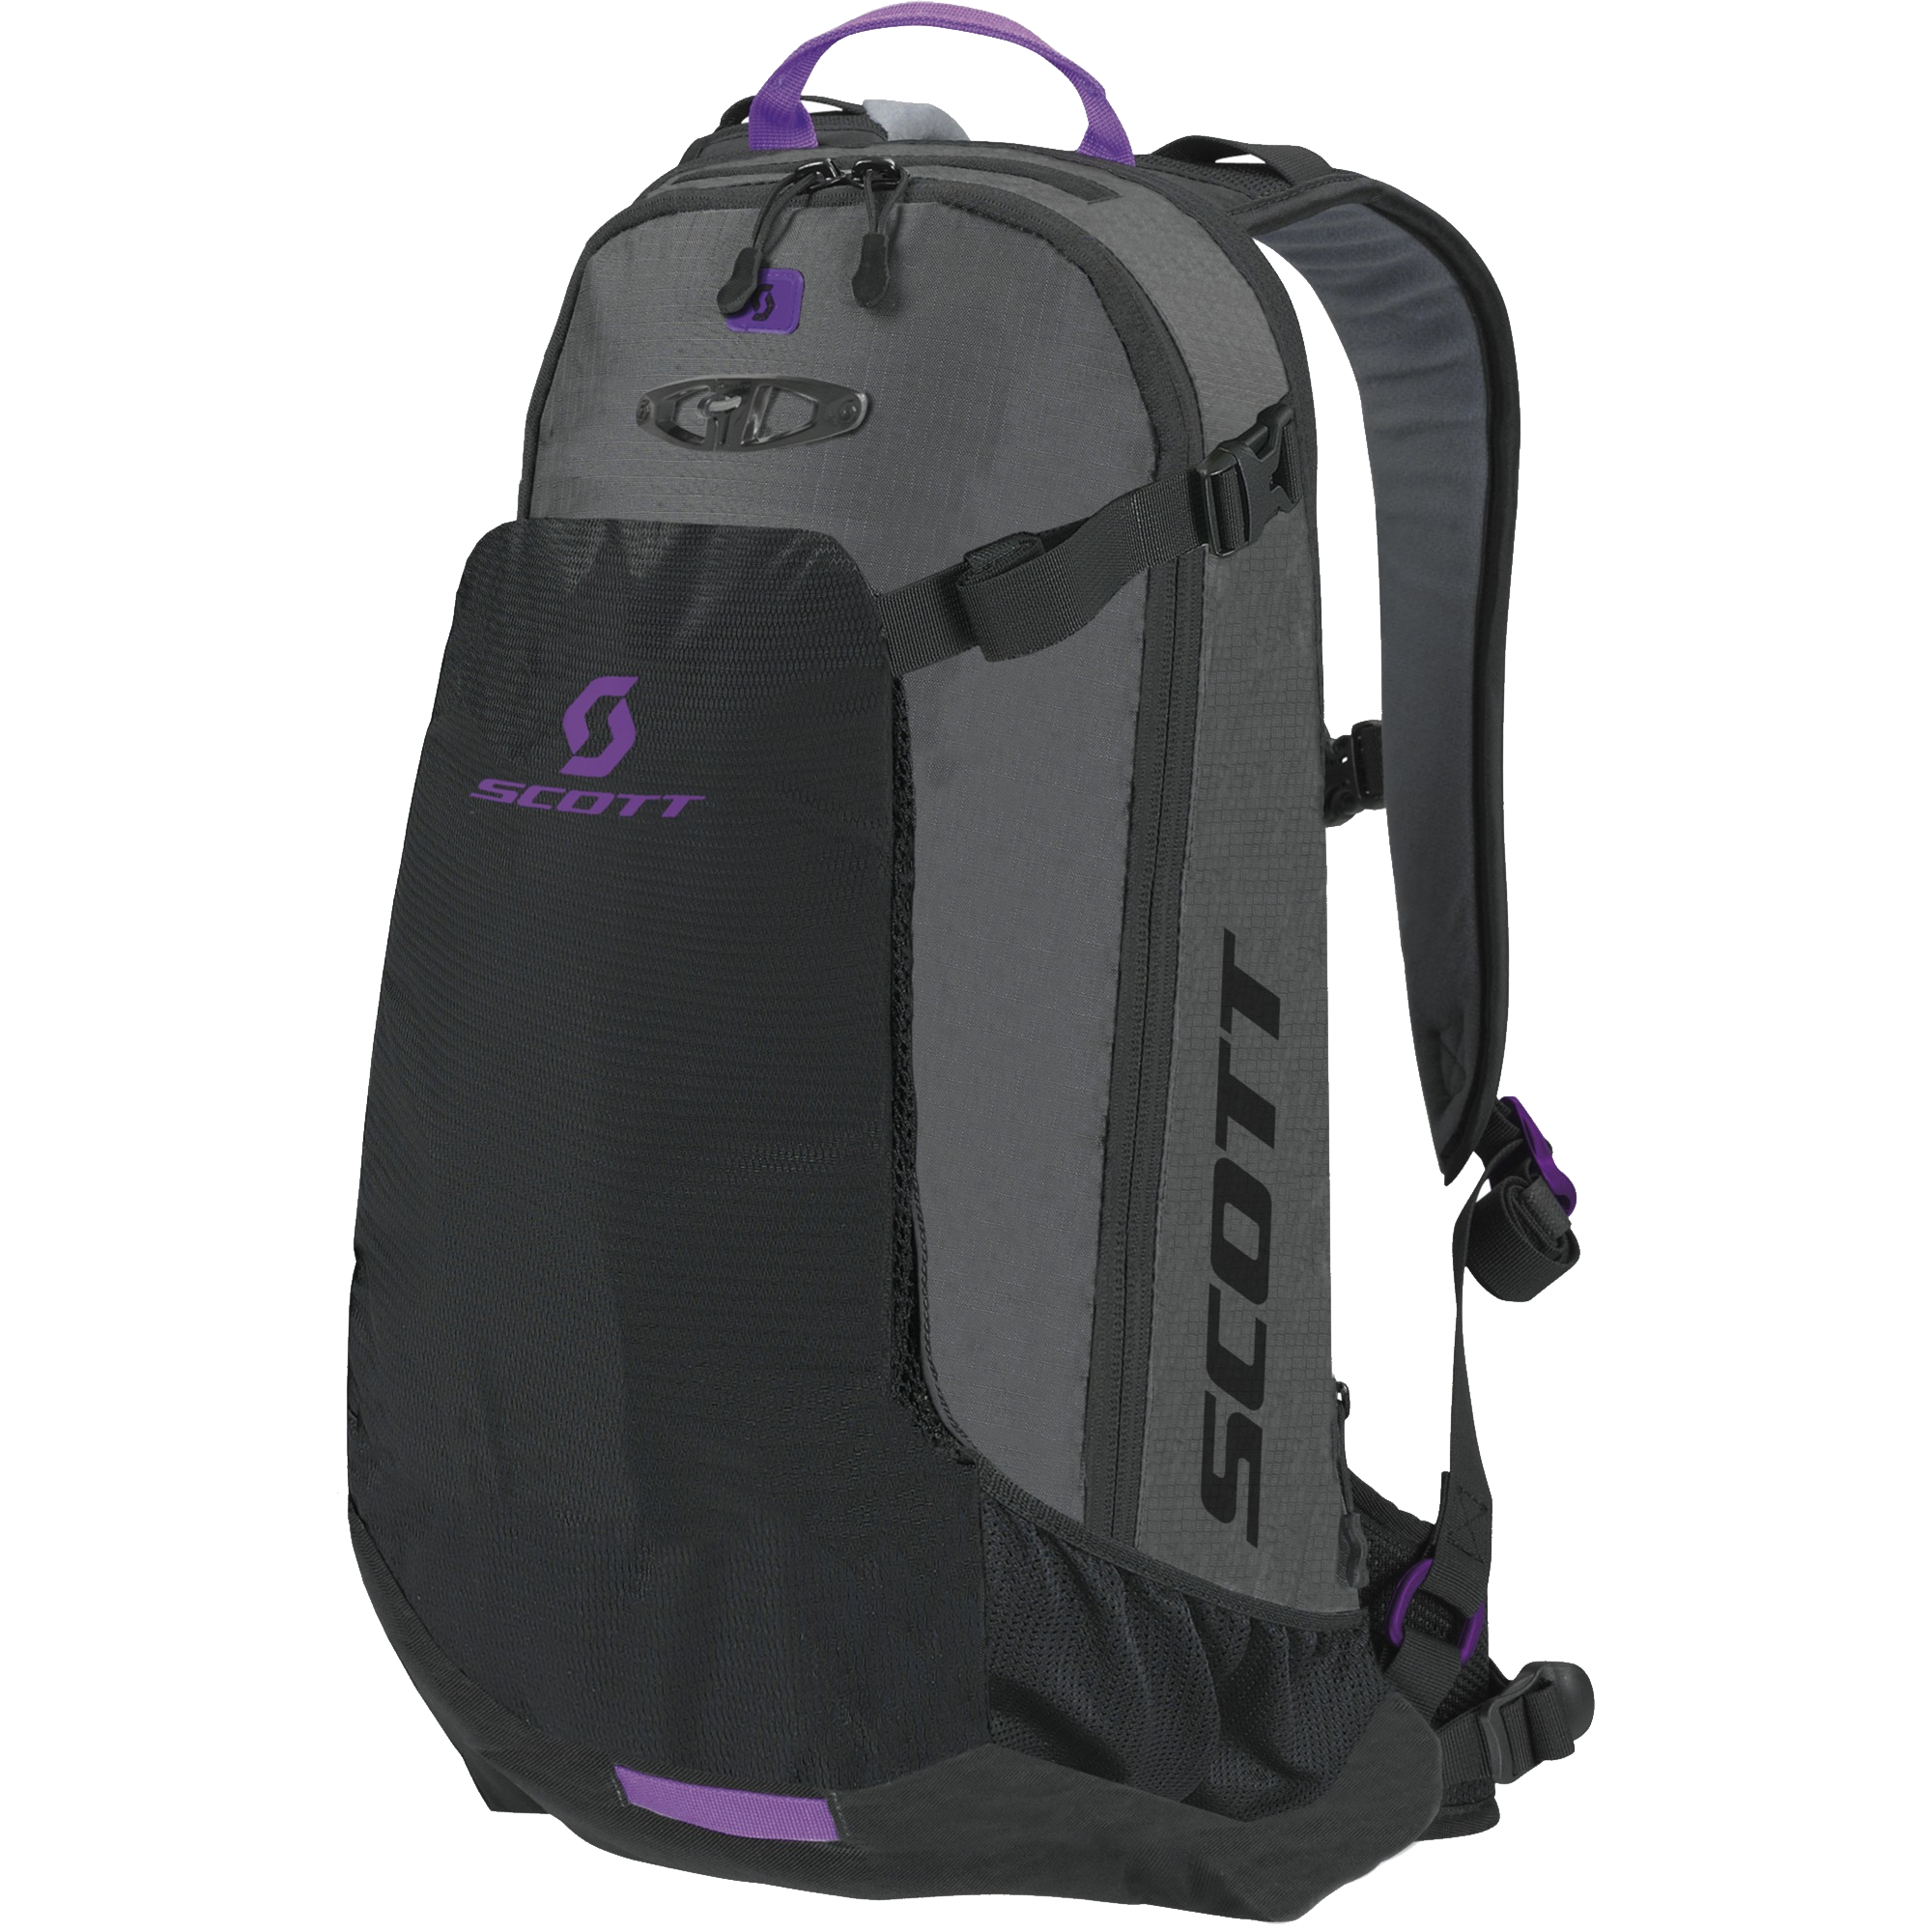 clipart backpack laptop bag